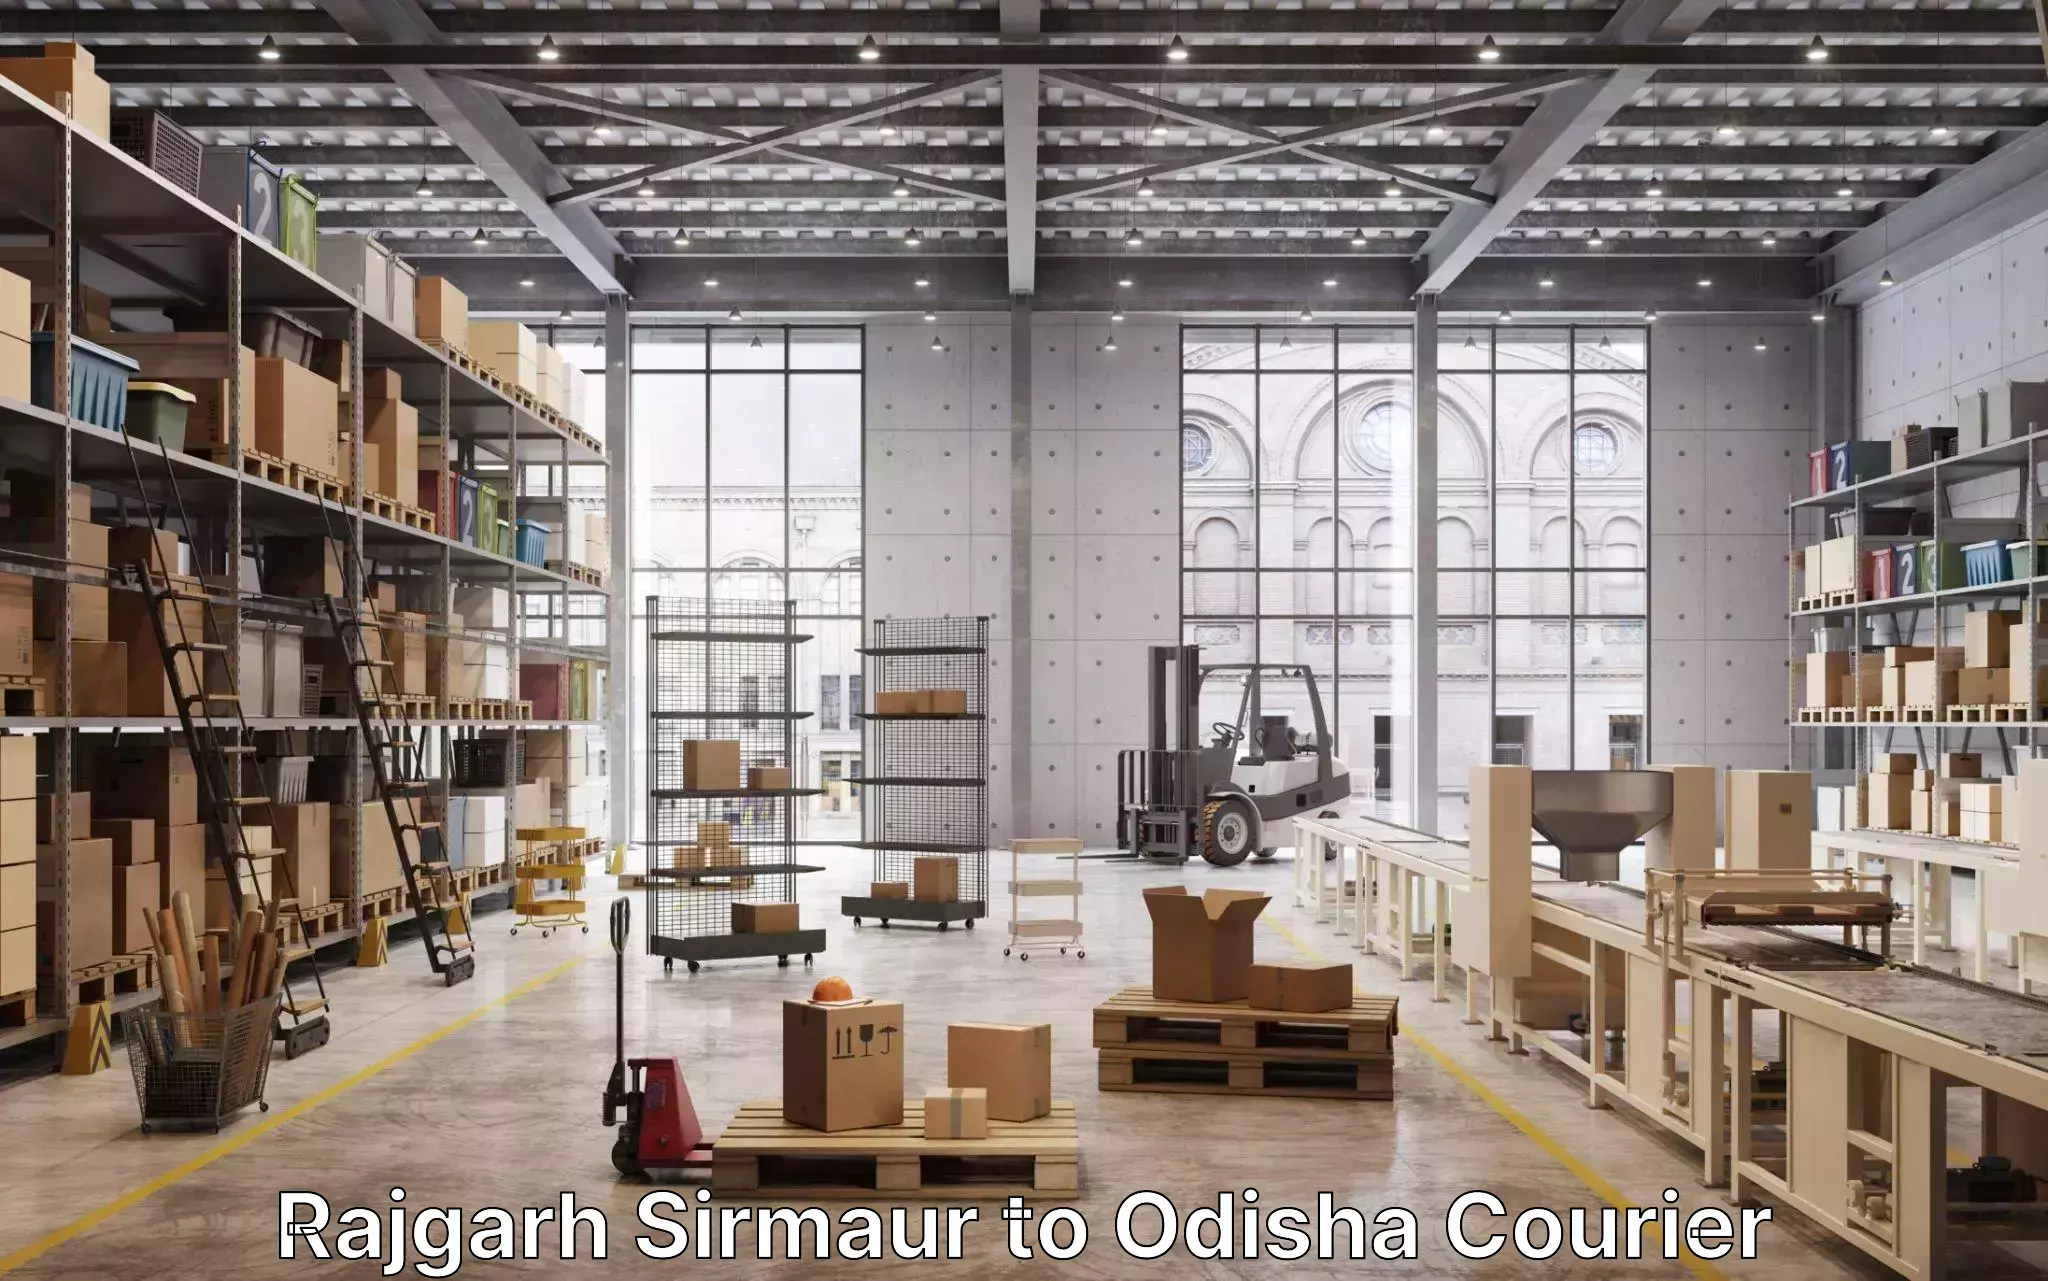 Furniture transport solutions Rajgarh Sirmaur to Bonth